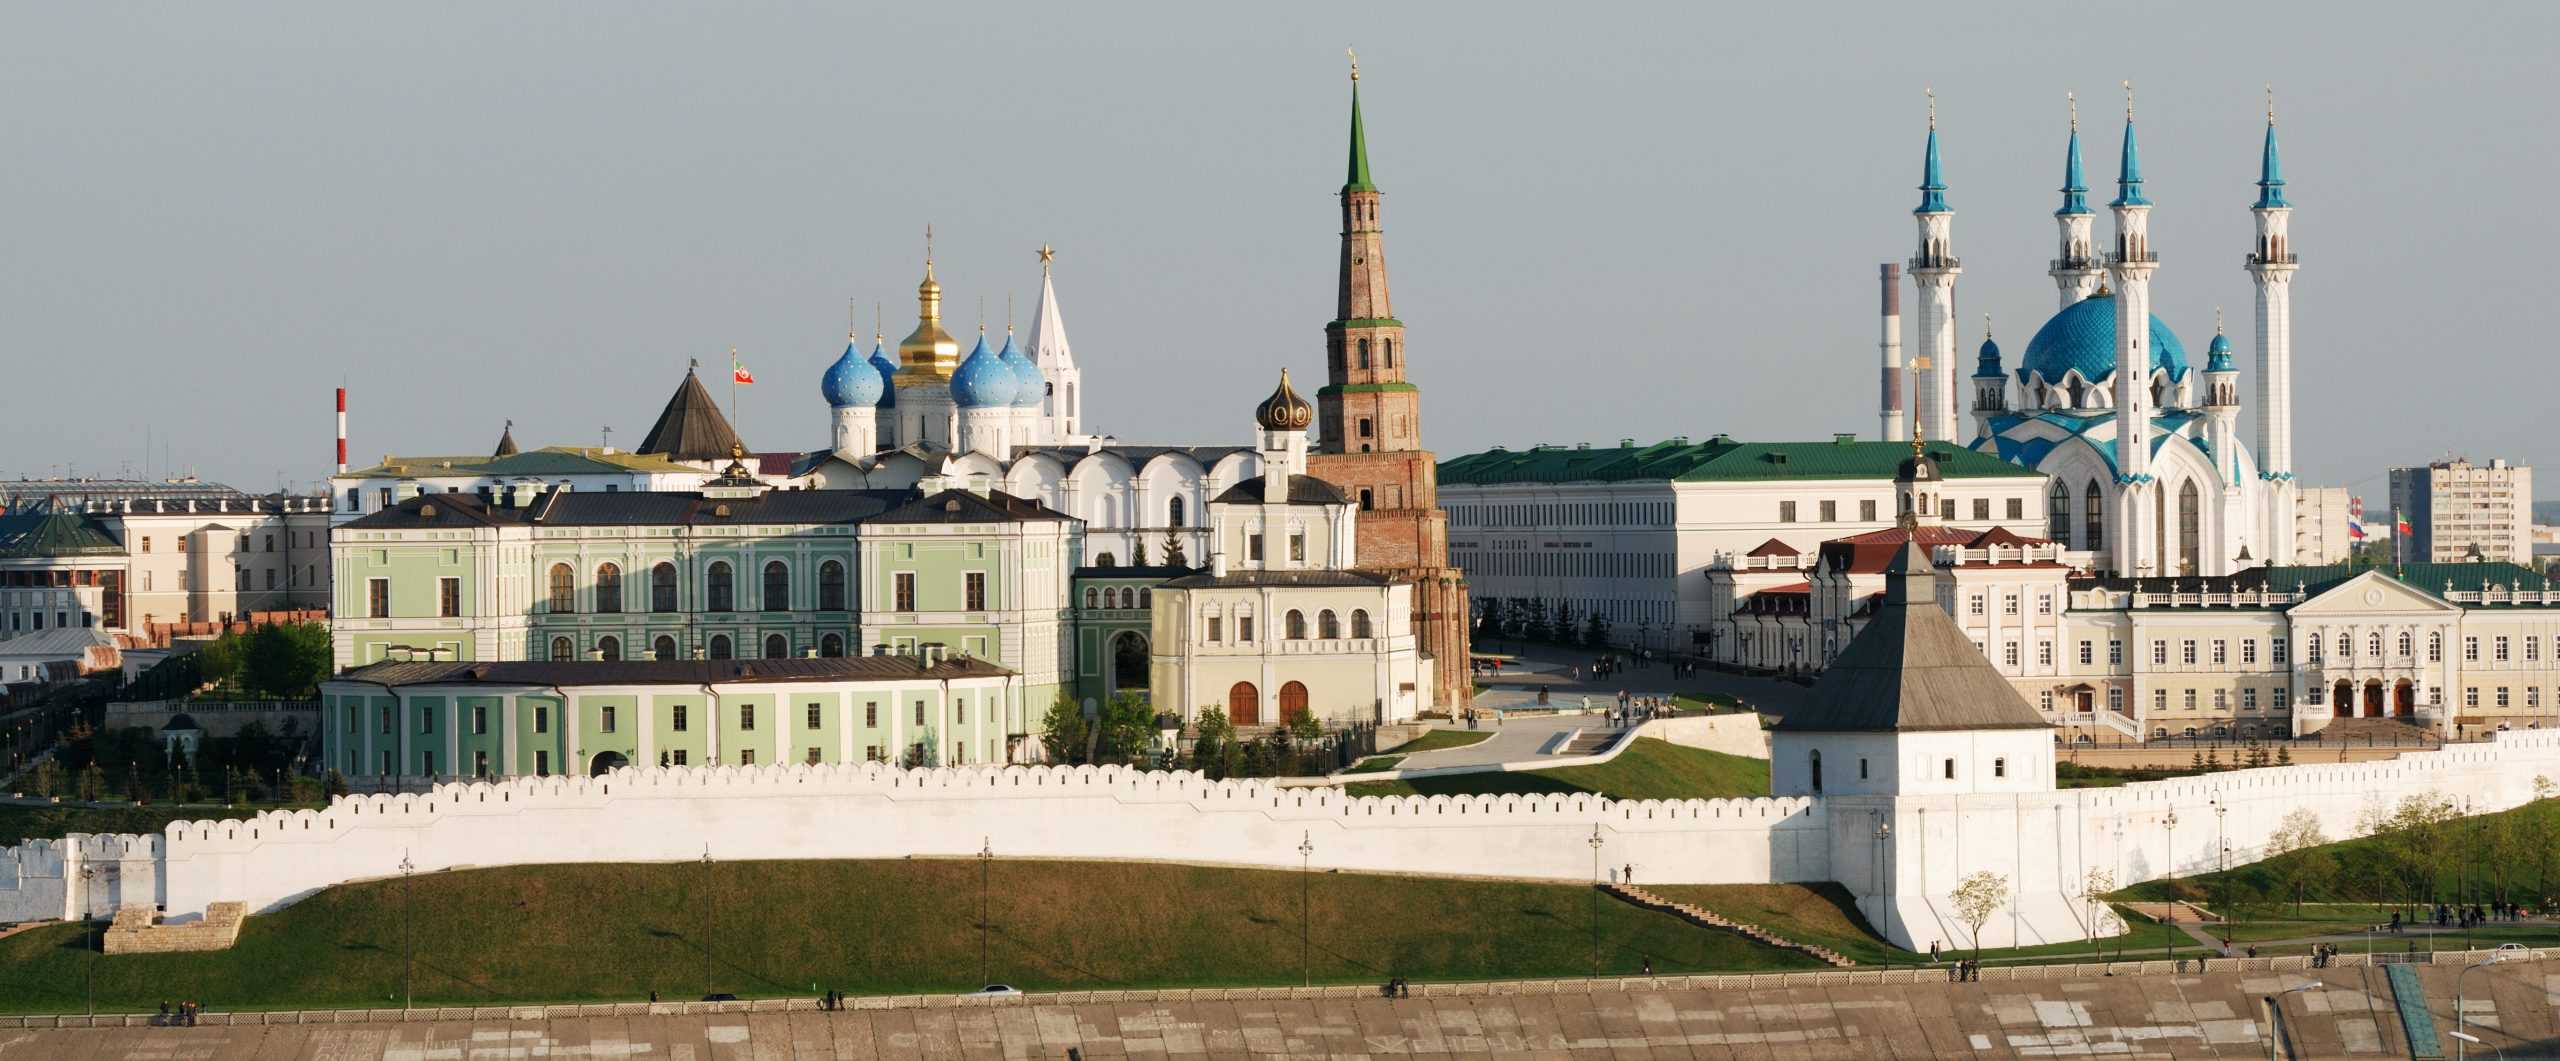 В музей не выходя из дома: виртуальная экскурсия по московскому кремлю